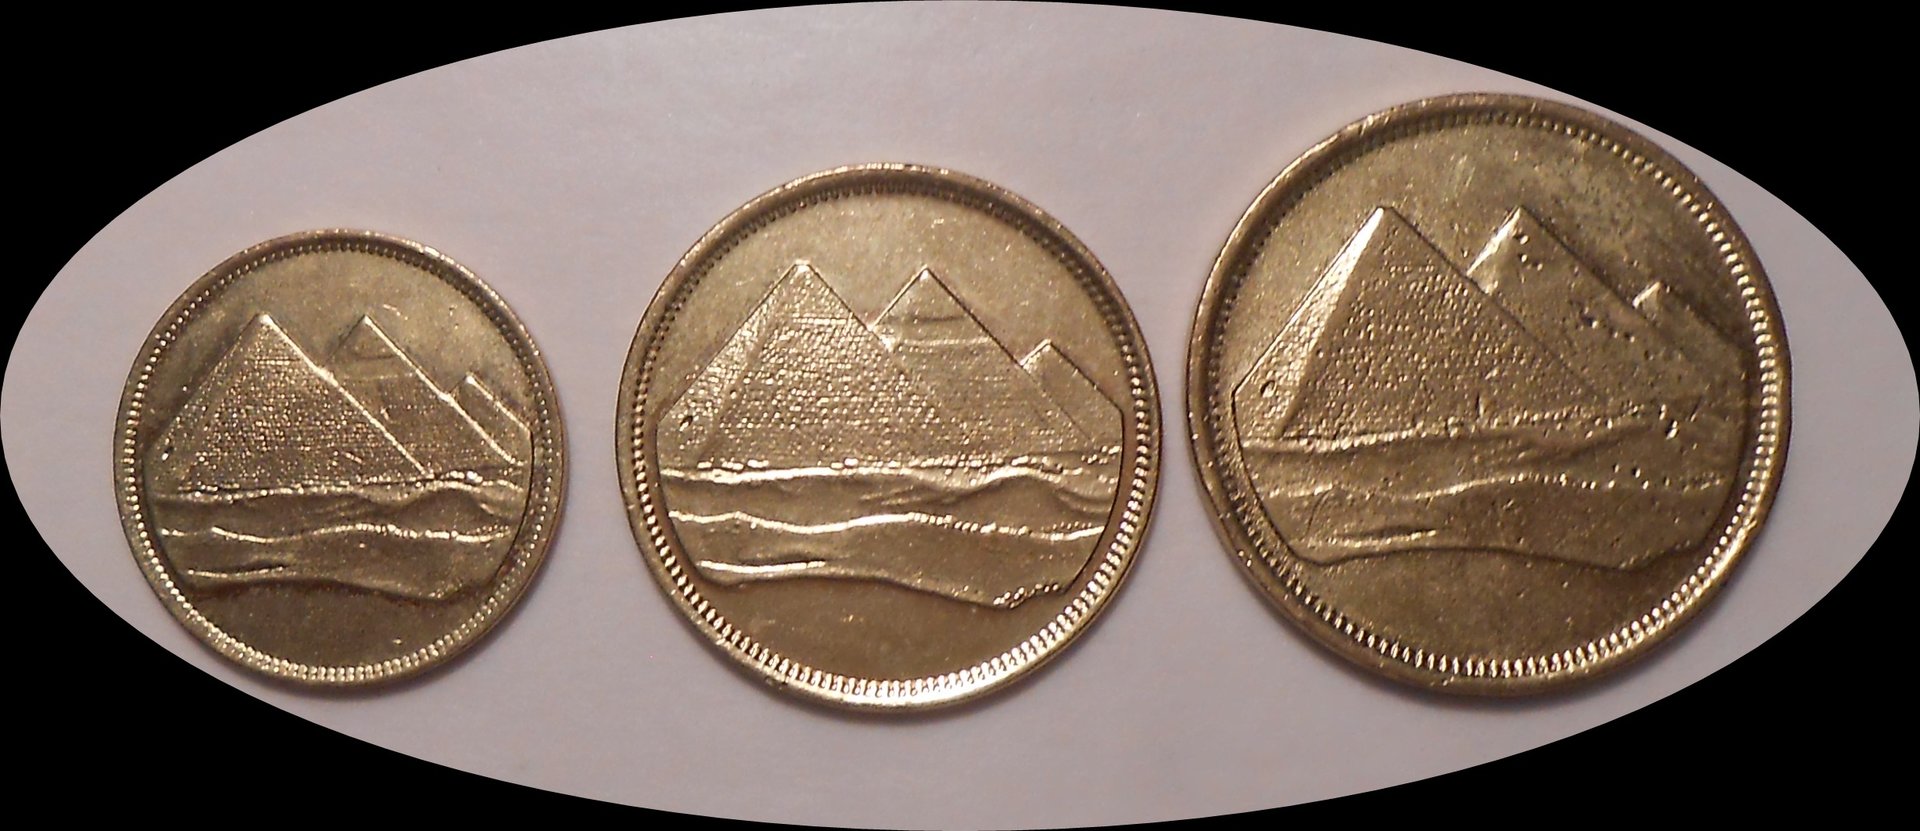 egytian coins 005.JPG